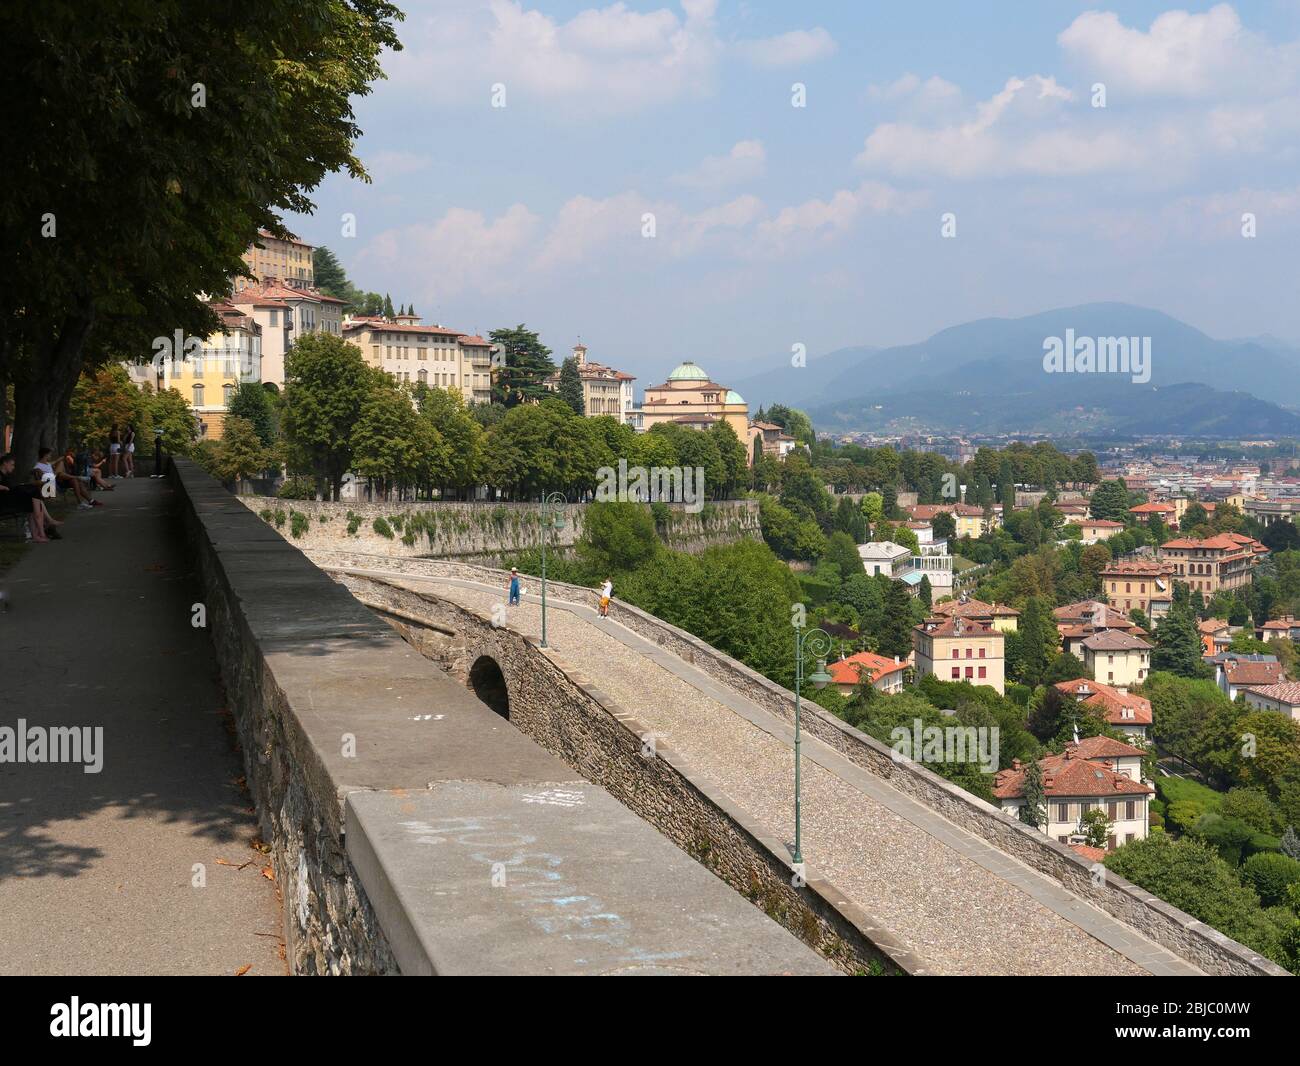 Bergame, Italie - 1 août 2019: Panorama vue de la ville haute de Bergame de la vieille ville mur avec deux touristes prenant photo sur la célèbre rue piétonne Banque D'Images